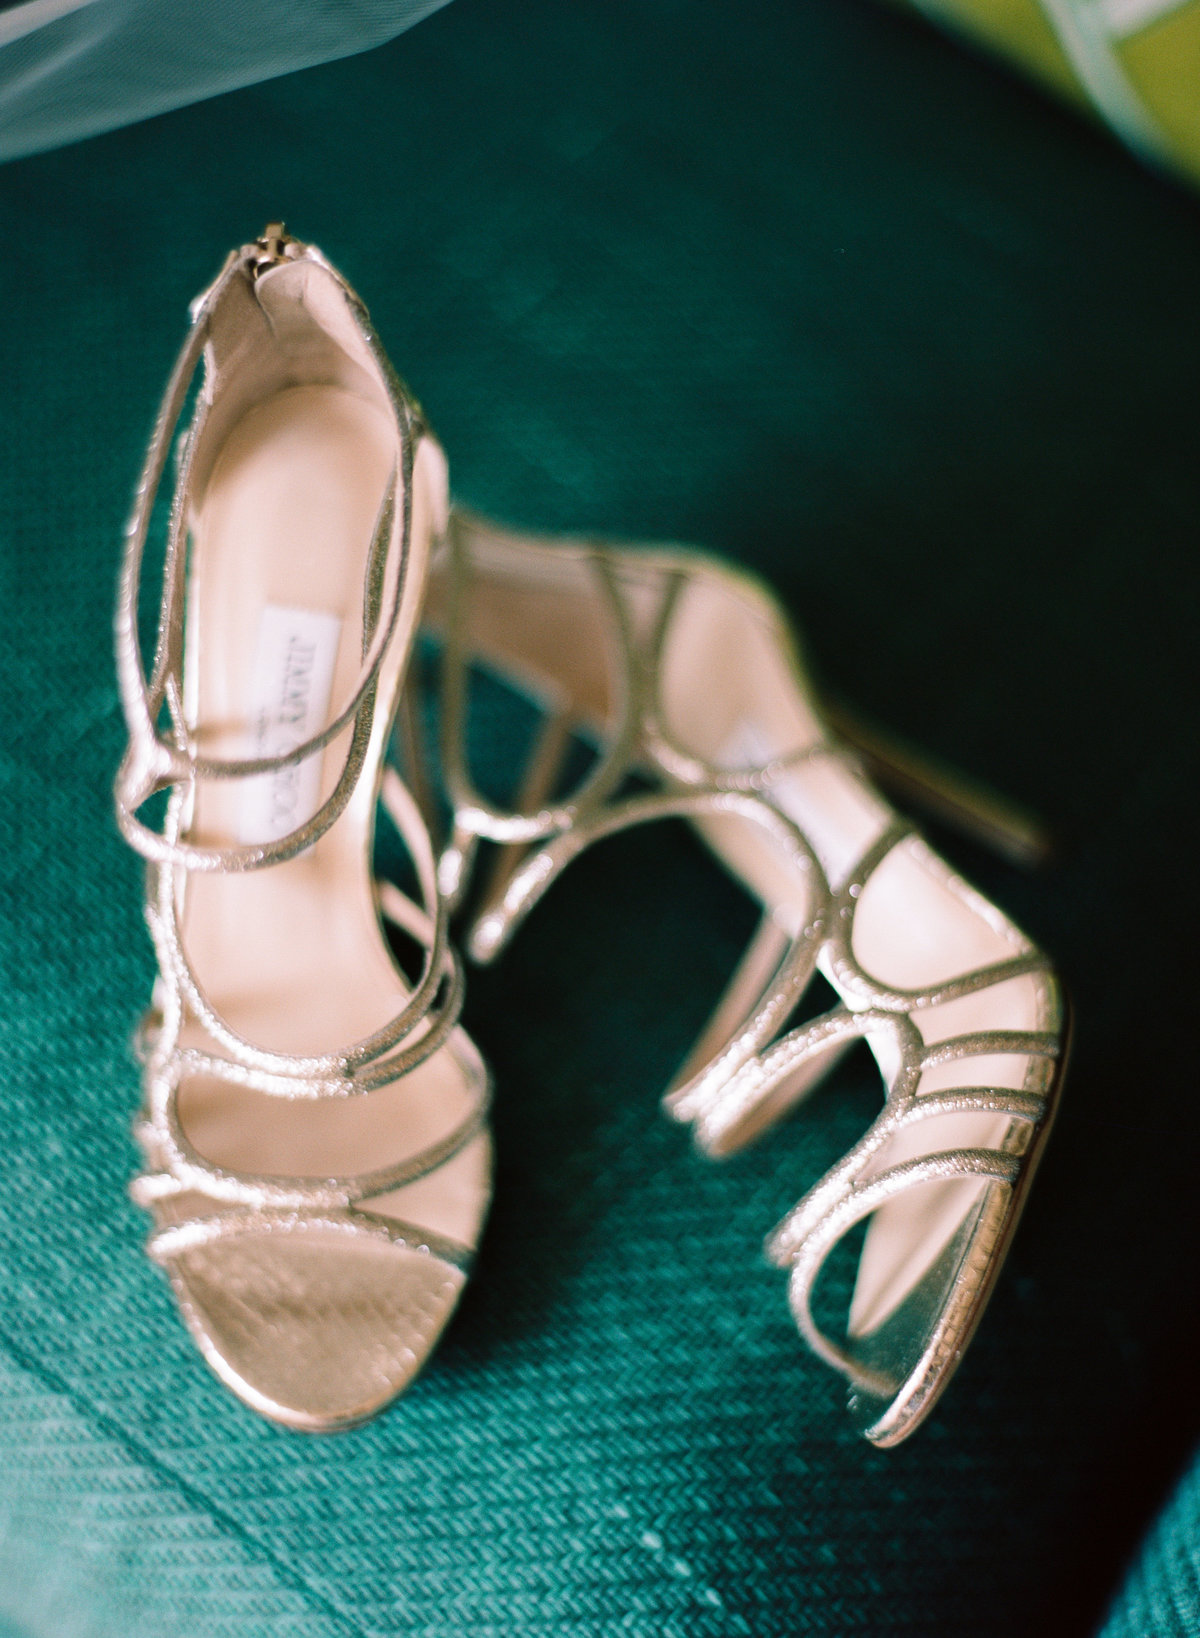 Luxury shoes bride details